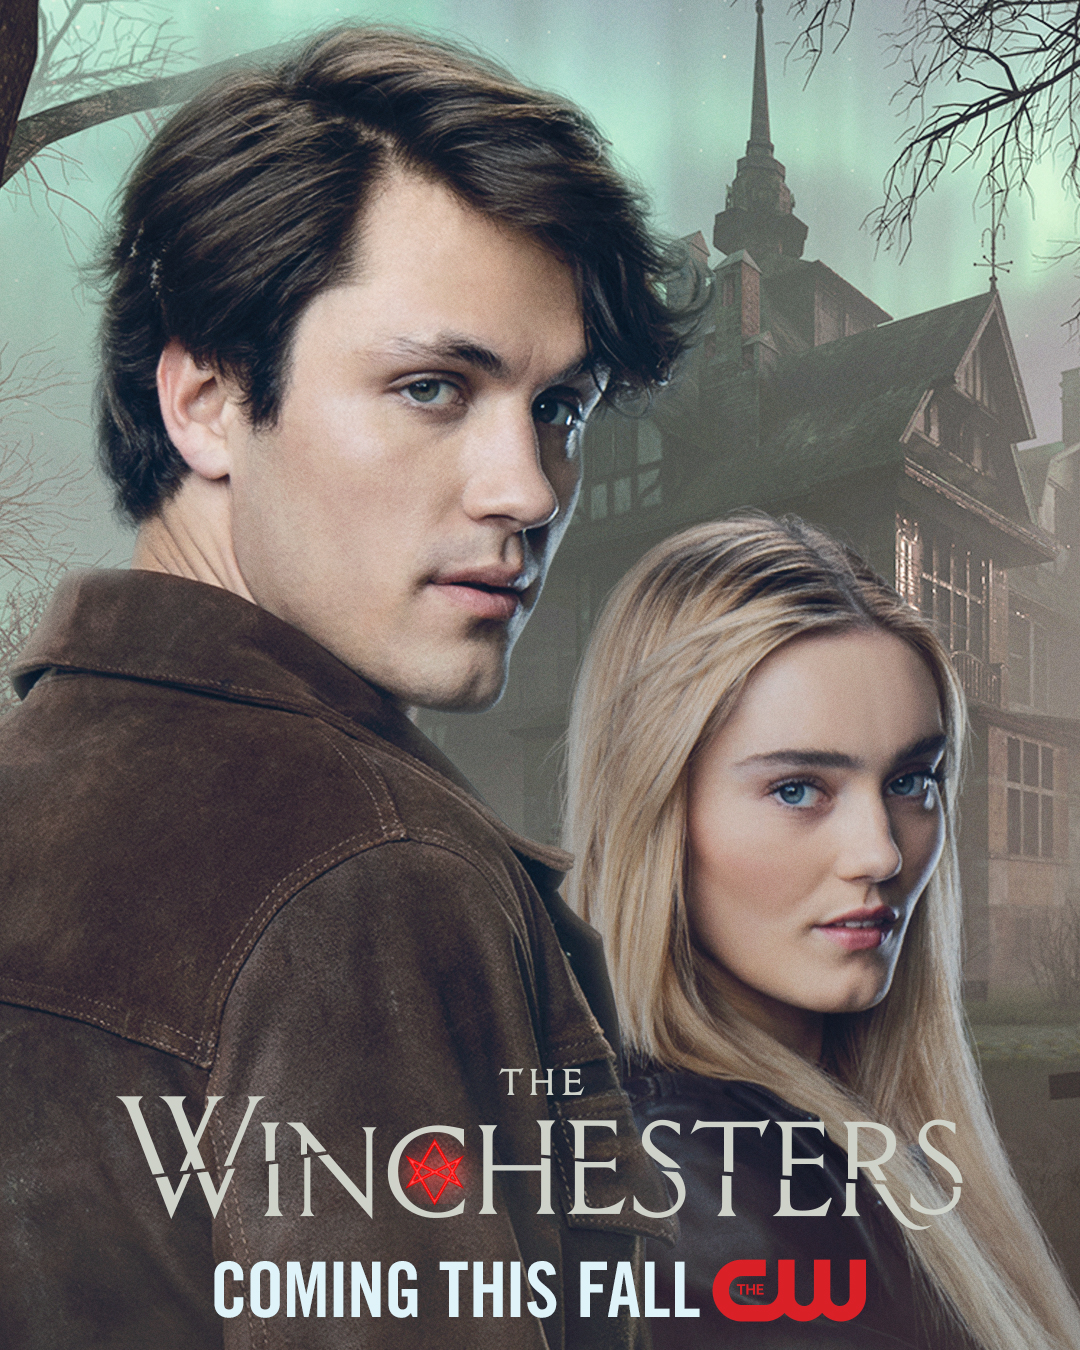   Lovci duchů: Winchesterovi / The Winchesters S01 (CZ/EN)[WebRip][1080p][HEVC] = CSFD 53%